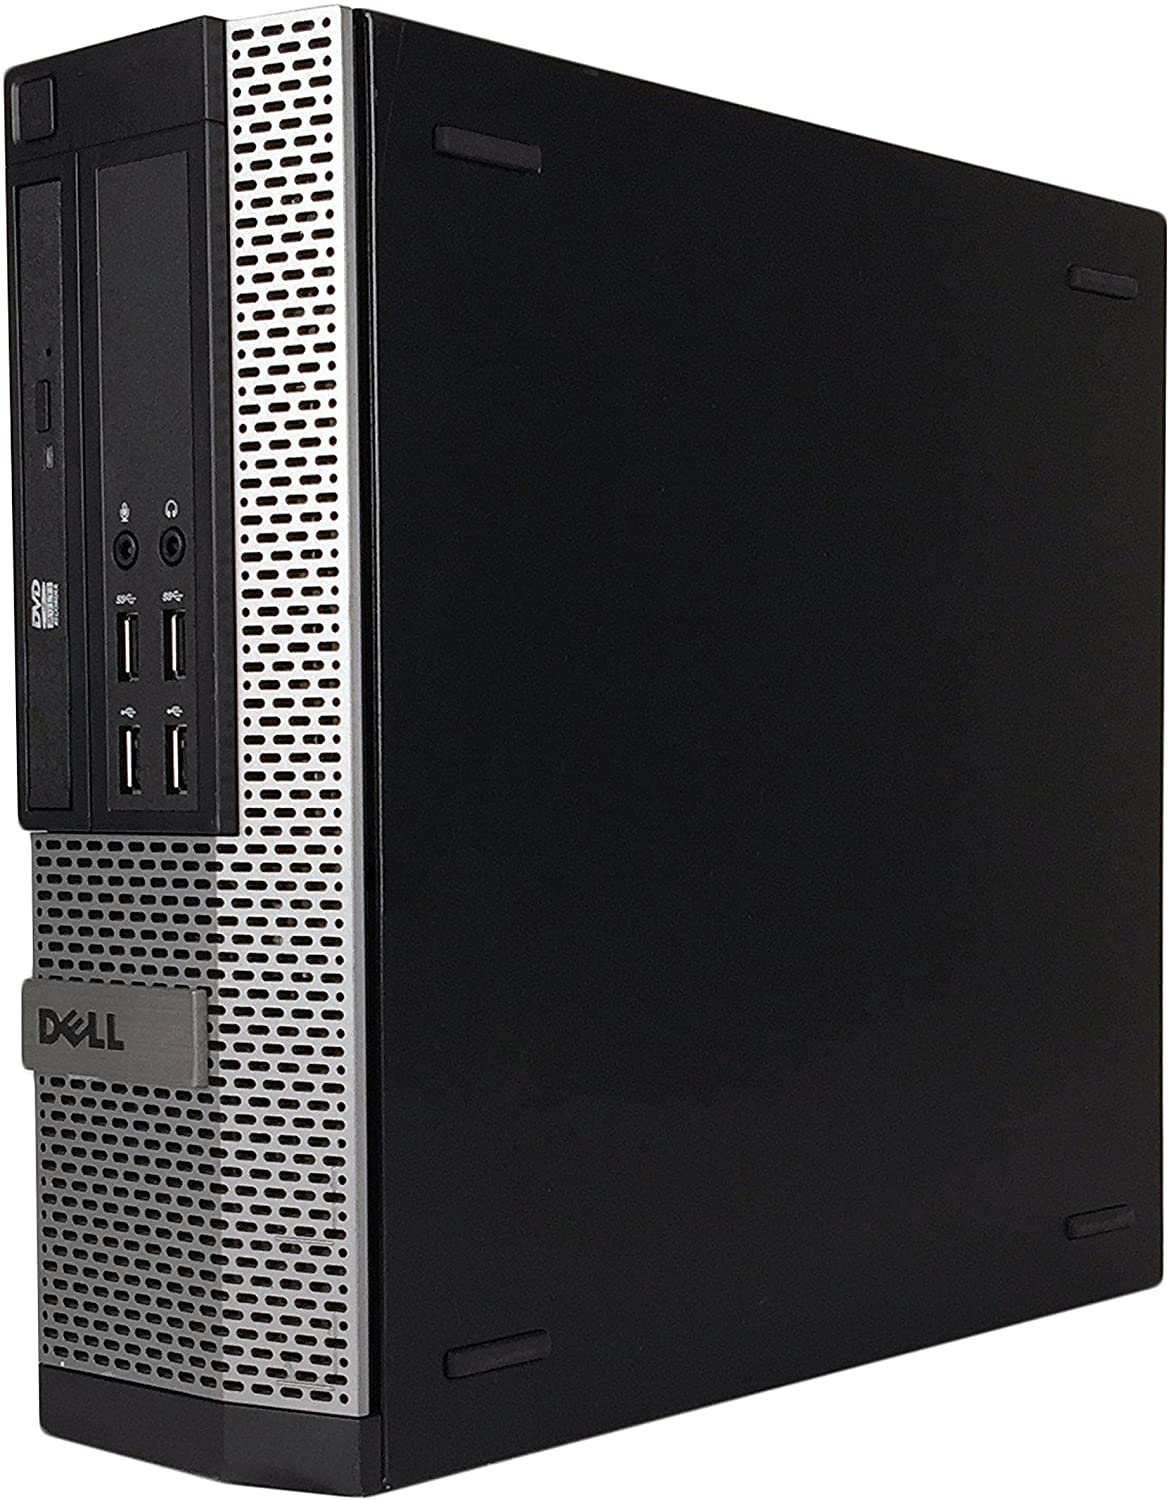 Dell 9020 SFF Business Desktop Mini Tower(Core i7-4790,8GB Ram,240GB SSD,WIFI,DVDRW)Win10Pro Renewed